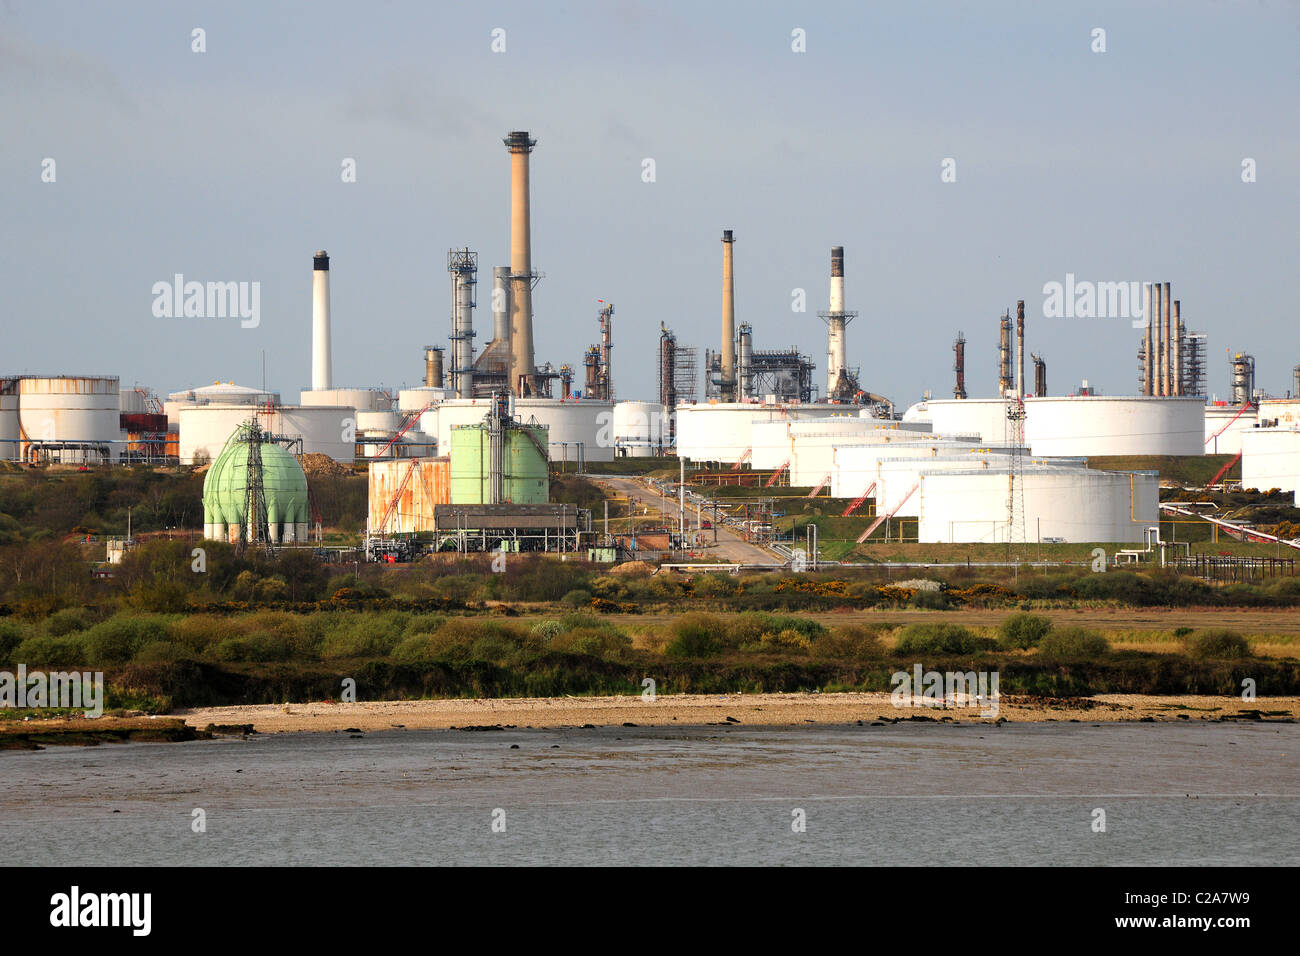 Una refinería de petróleo con chimeneas y grandes tanques de almacenamiento. Foto de stock